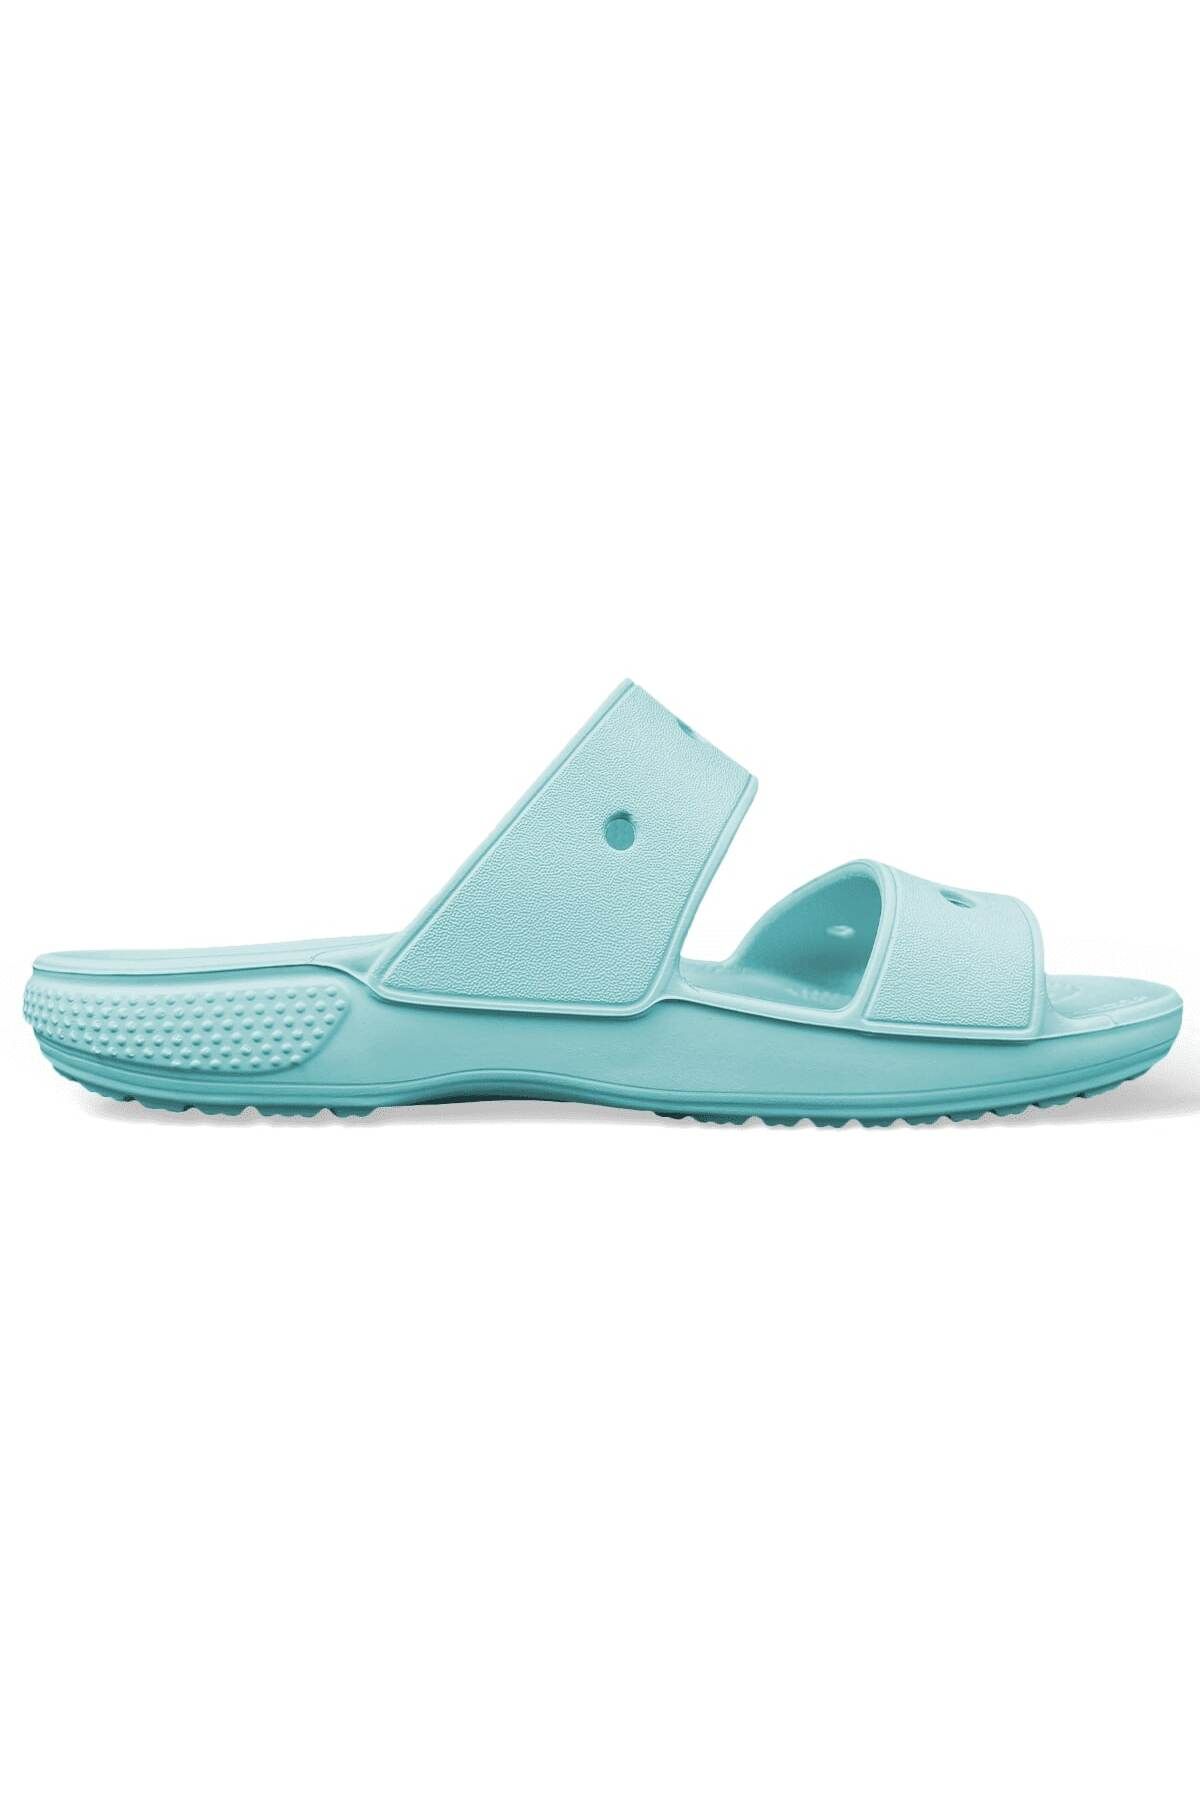 Crocs Classic Sandal Kadın Mavi Terlik